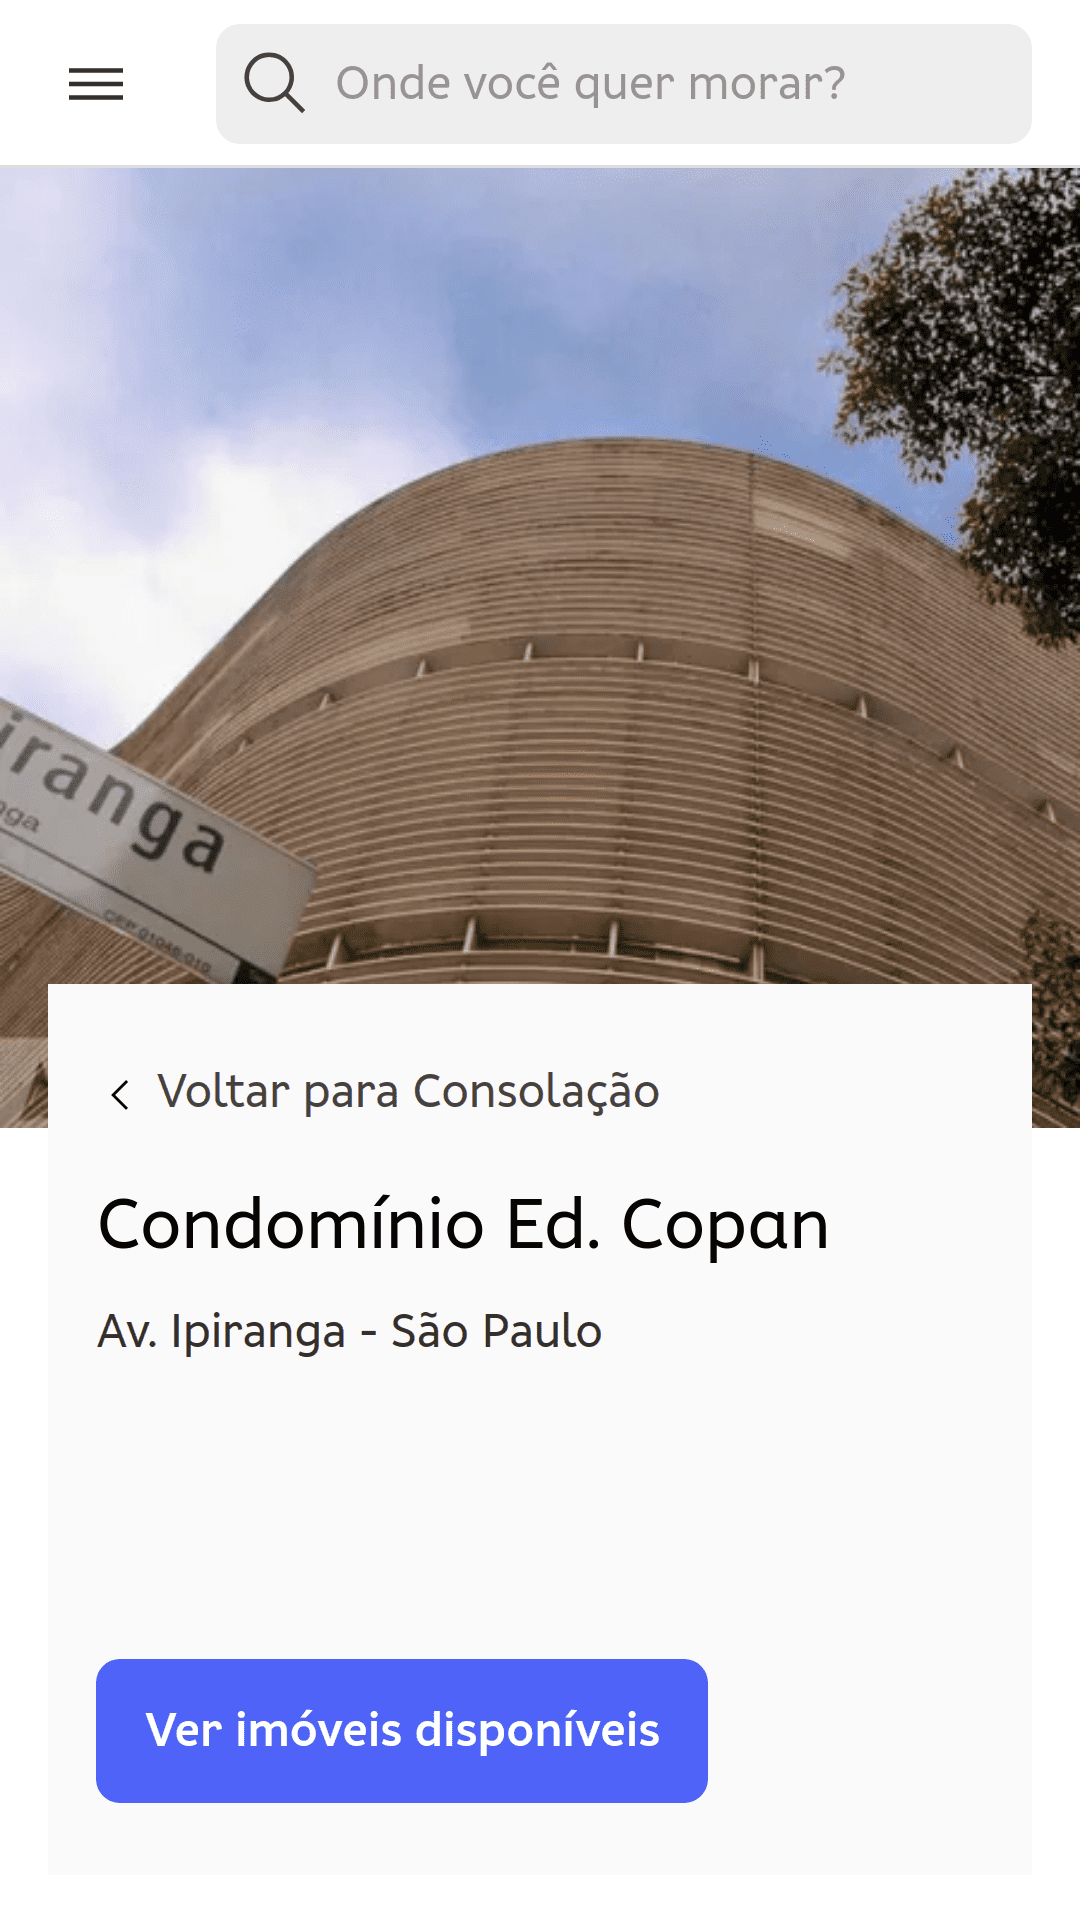 Edifício Copan（ブラジル、サンパウロ）のマンションのページ。地面から撮影された写真には、建物構造の曲線が描かれています。